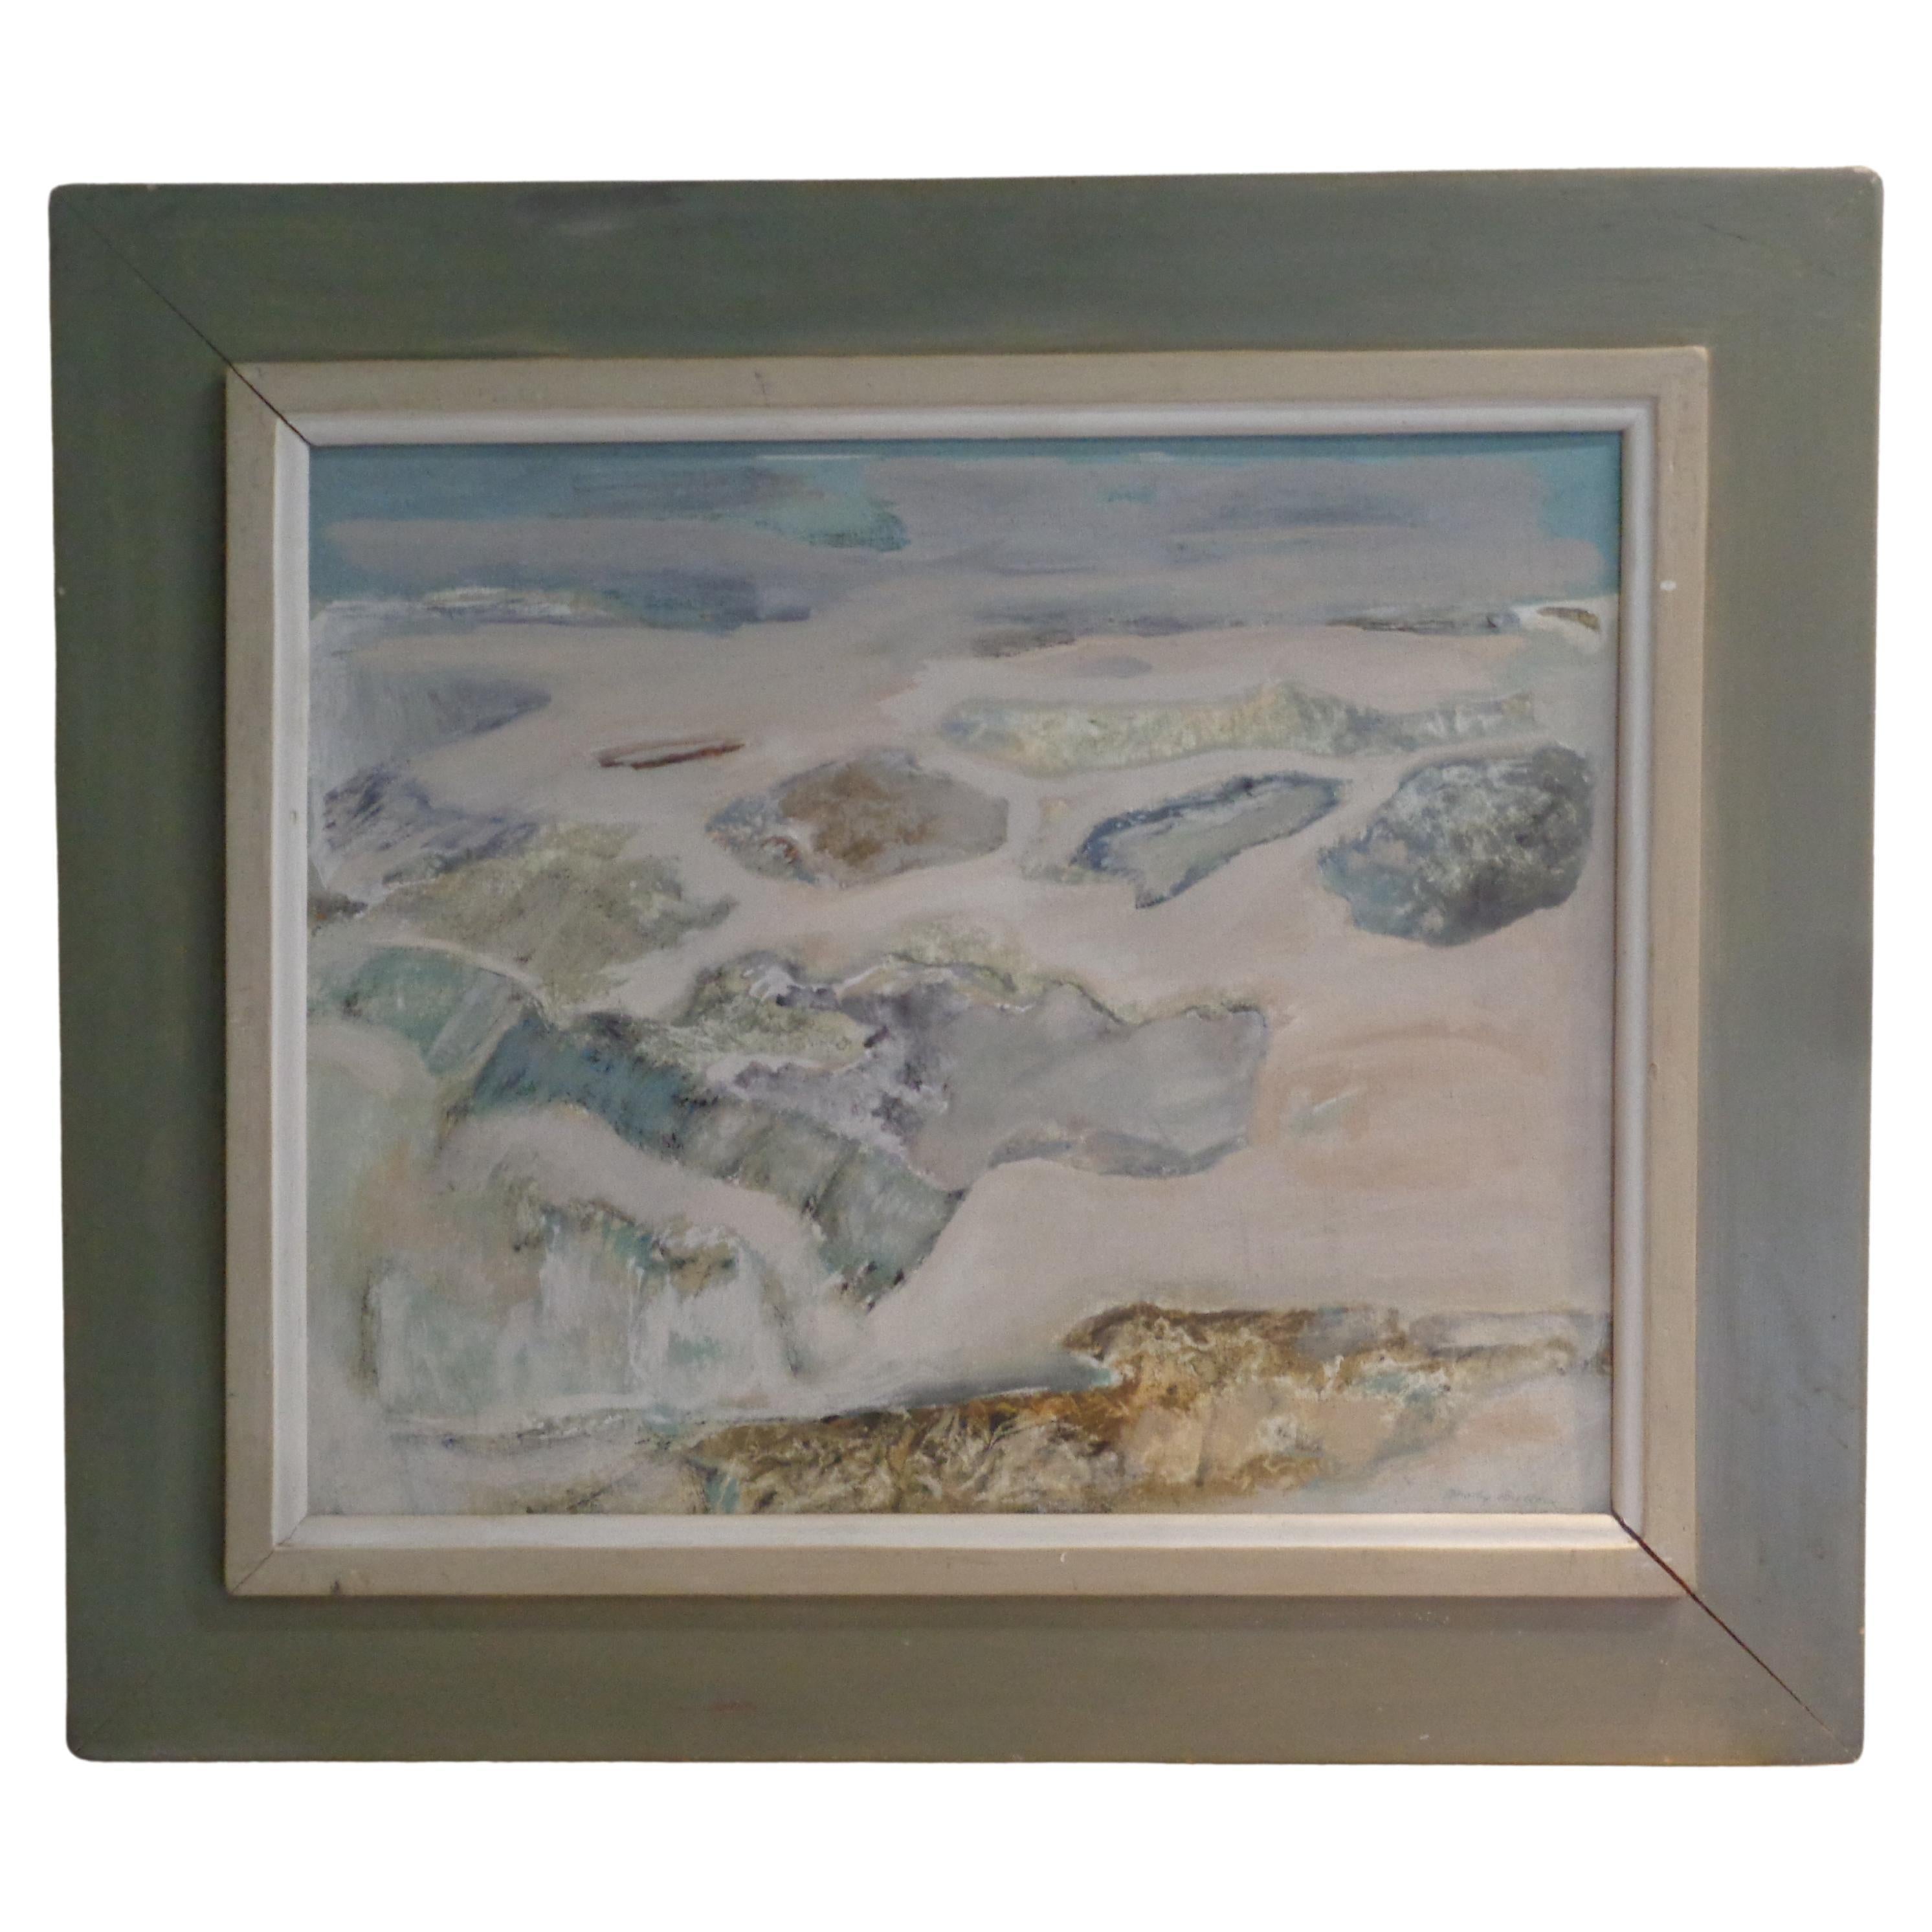 Pintura al óleo impresionista americana de una escena de playa oceánica sobre tabla de artista en un marco original muy bonito de madera pintada en azul suave, gris y blanco. Artista firmada Dorothy Bullock esquina inferior derecha. Etiqueta de